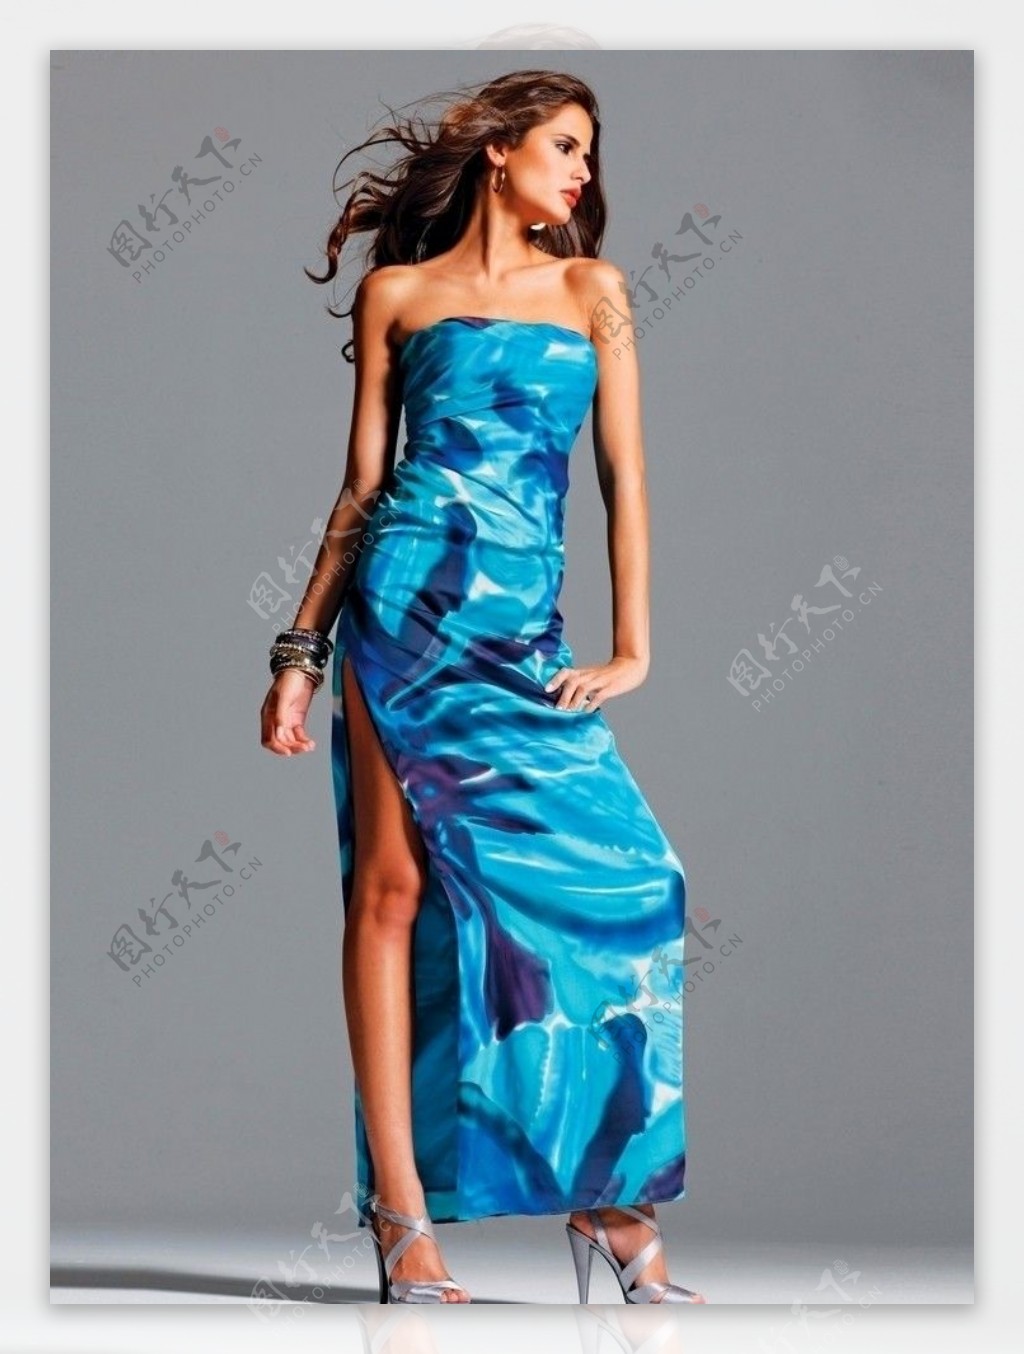 蓝色裙子性感美女模特图片